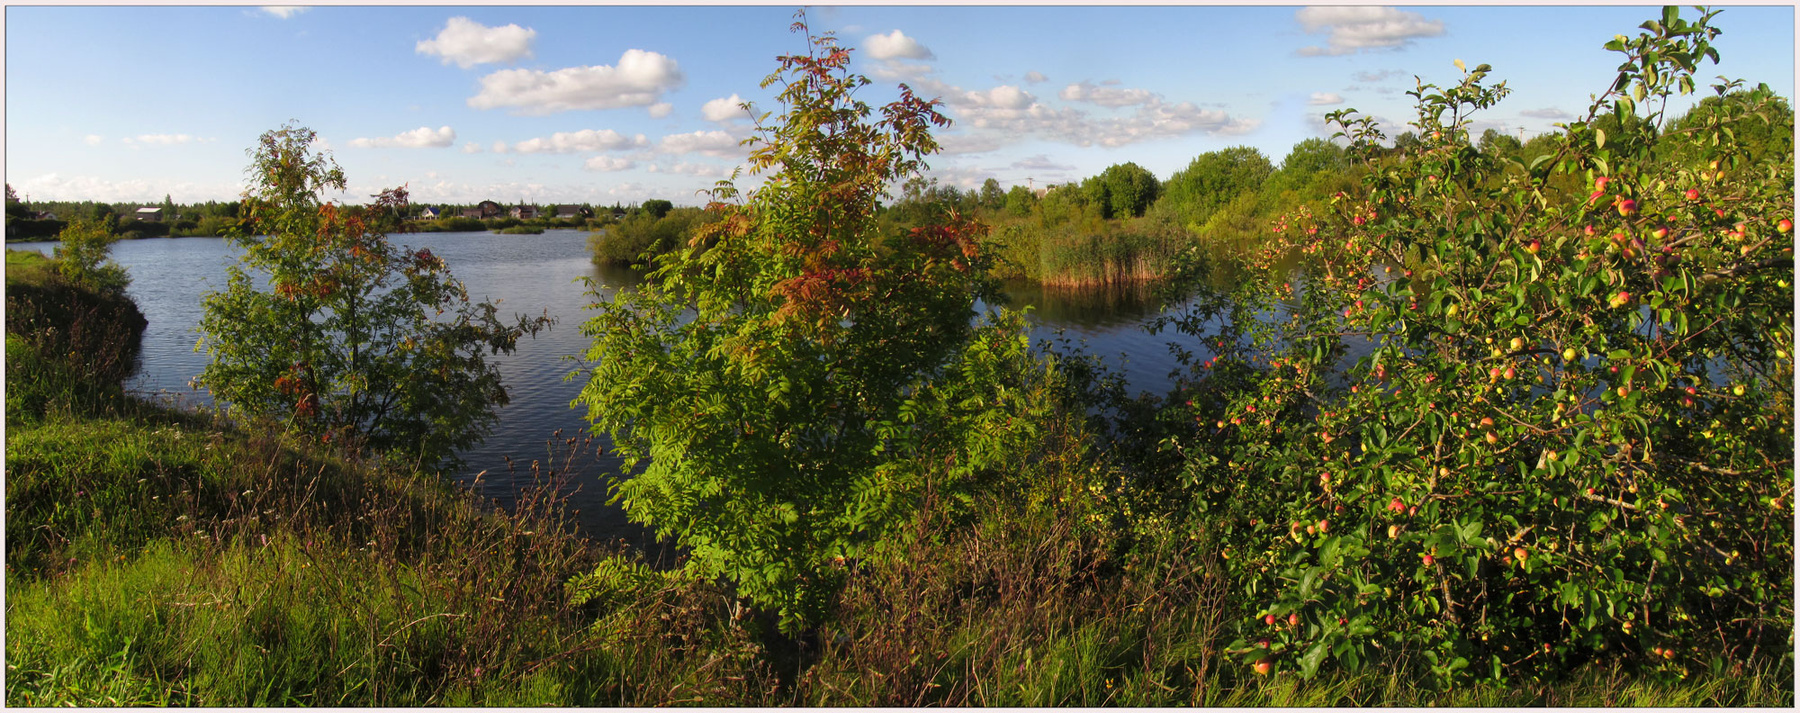 Запахло осенью слегка...) Панорама озеро яблоки осенняя листва сельские зарисовки